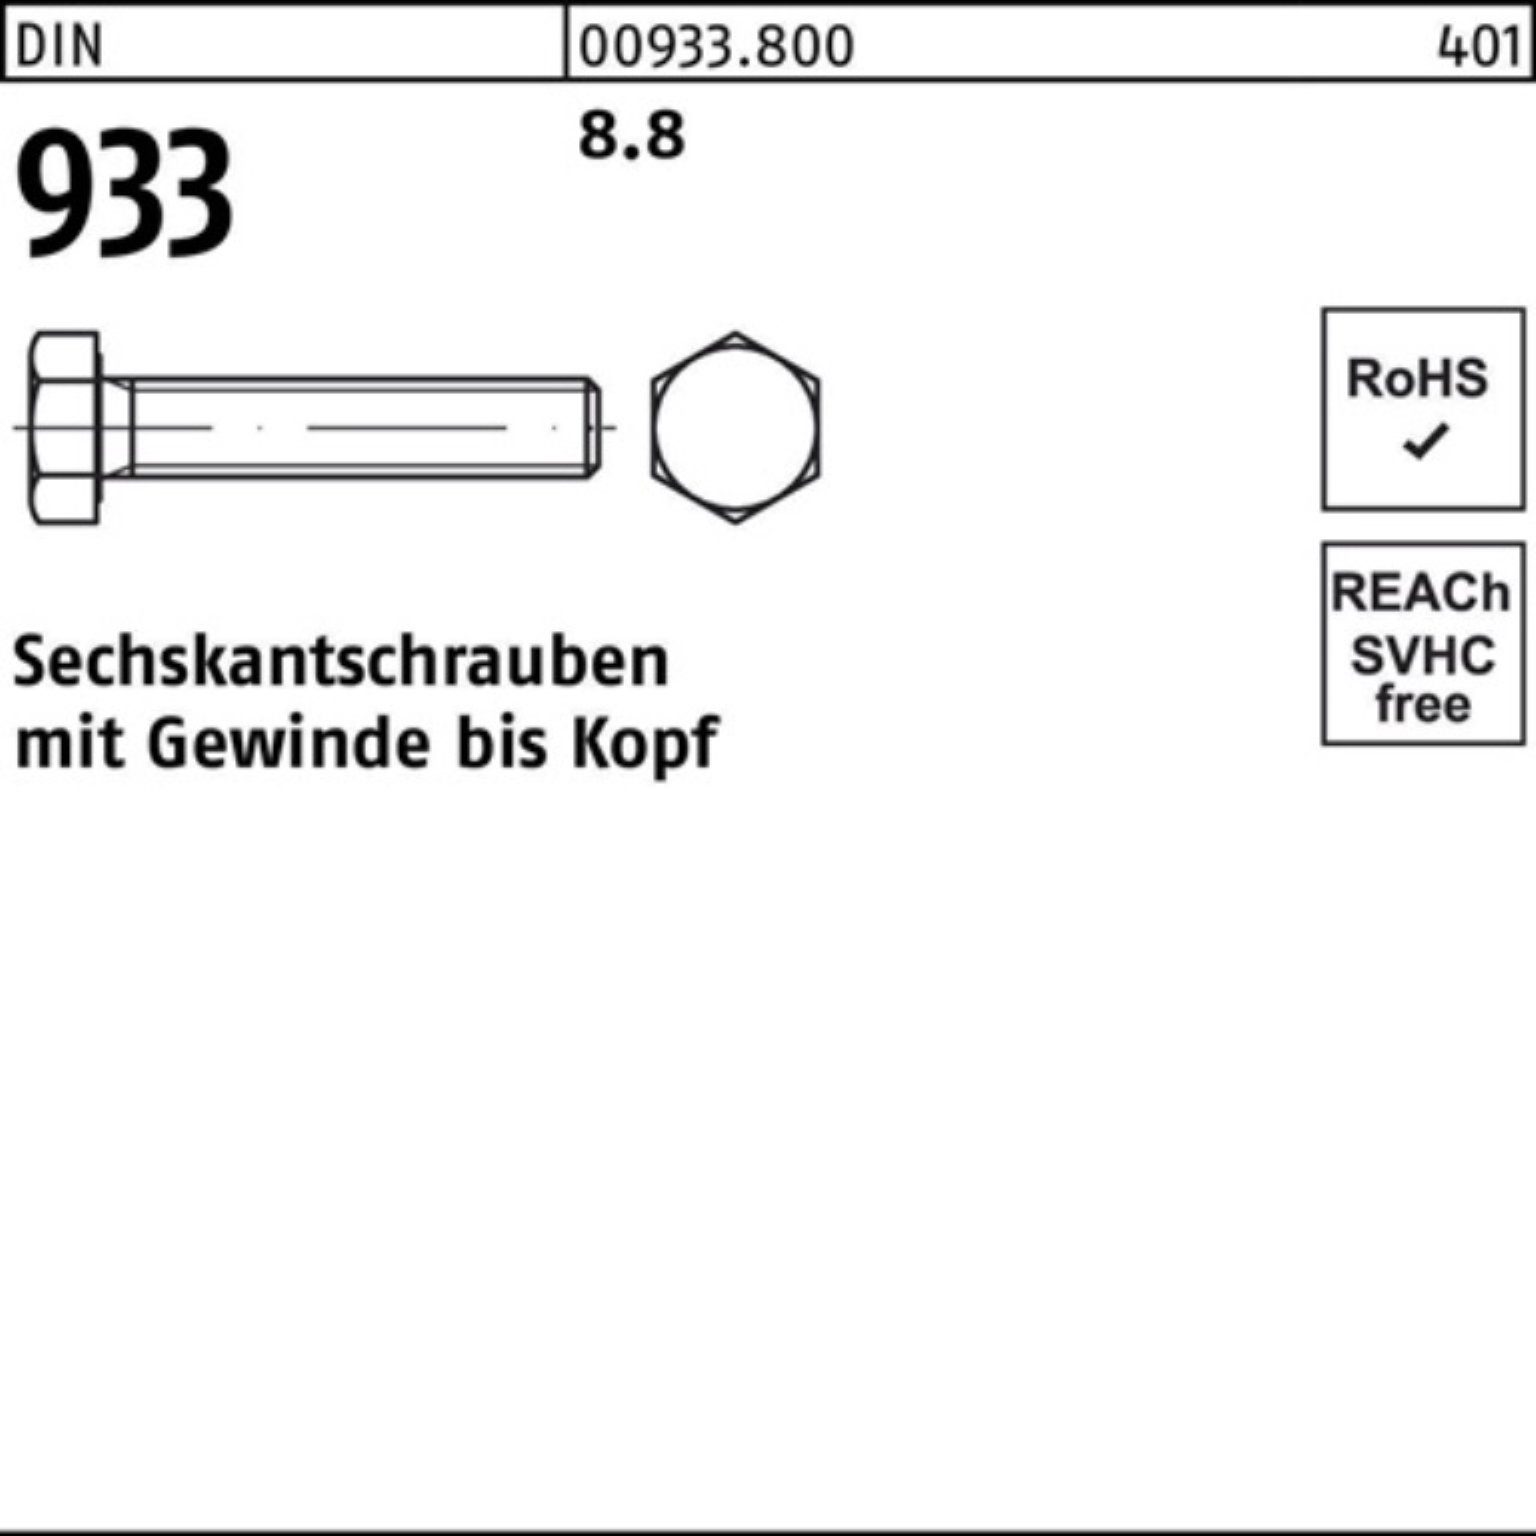 M20x Sechskantschraube 933 DIN 1 8.8 DIN 100er Pack VG Stück 933 Sechskantschraube 230 Reyher